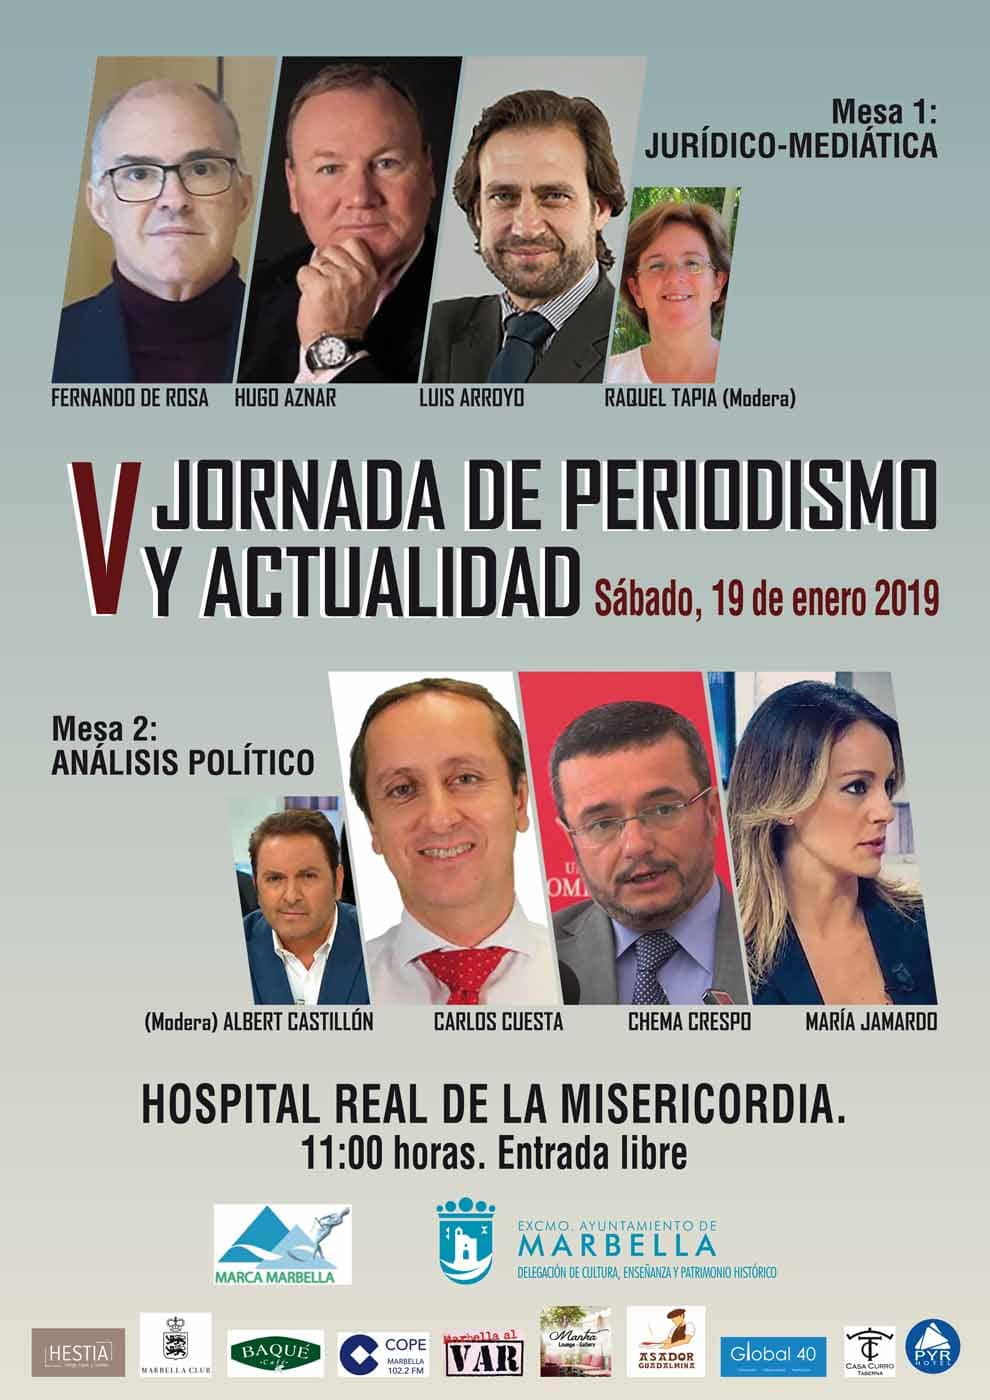 El Hospital Real de la Misericordia acogerá este sábado la V Jornada de Periodismo y Actualidad